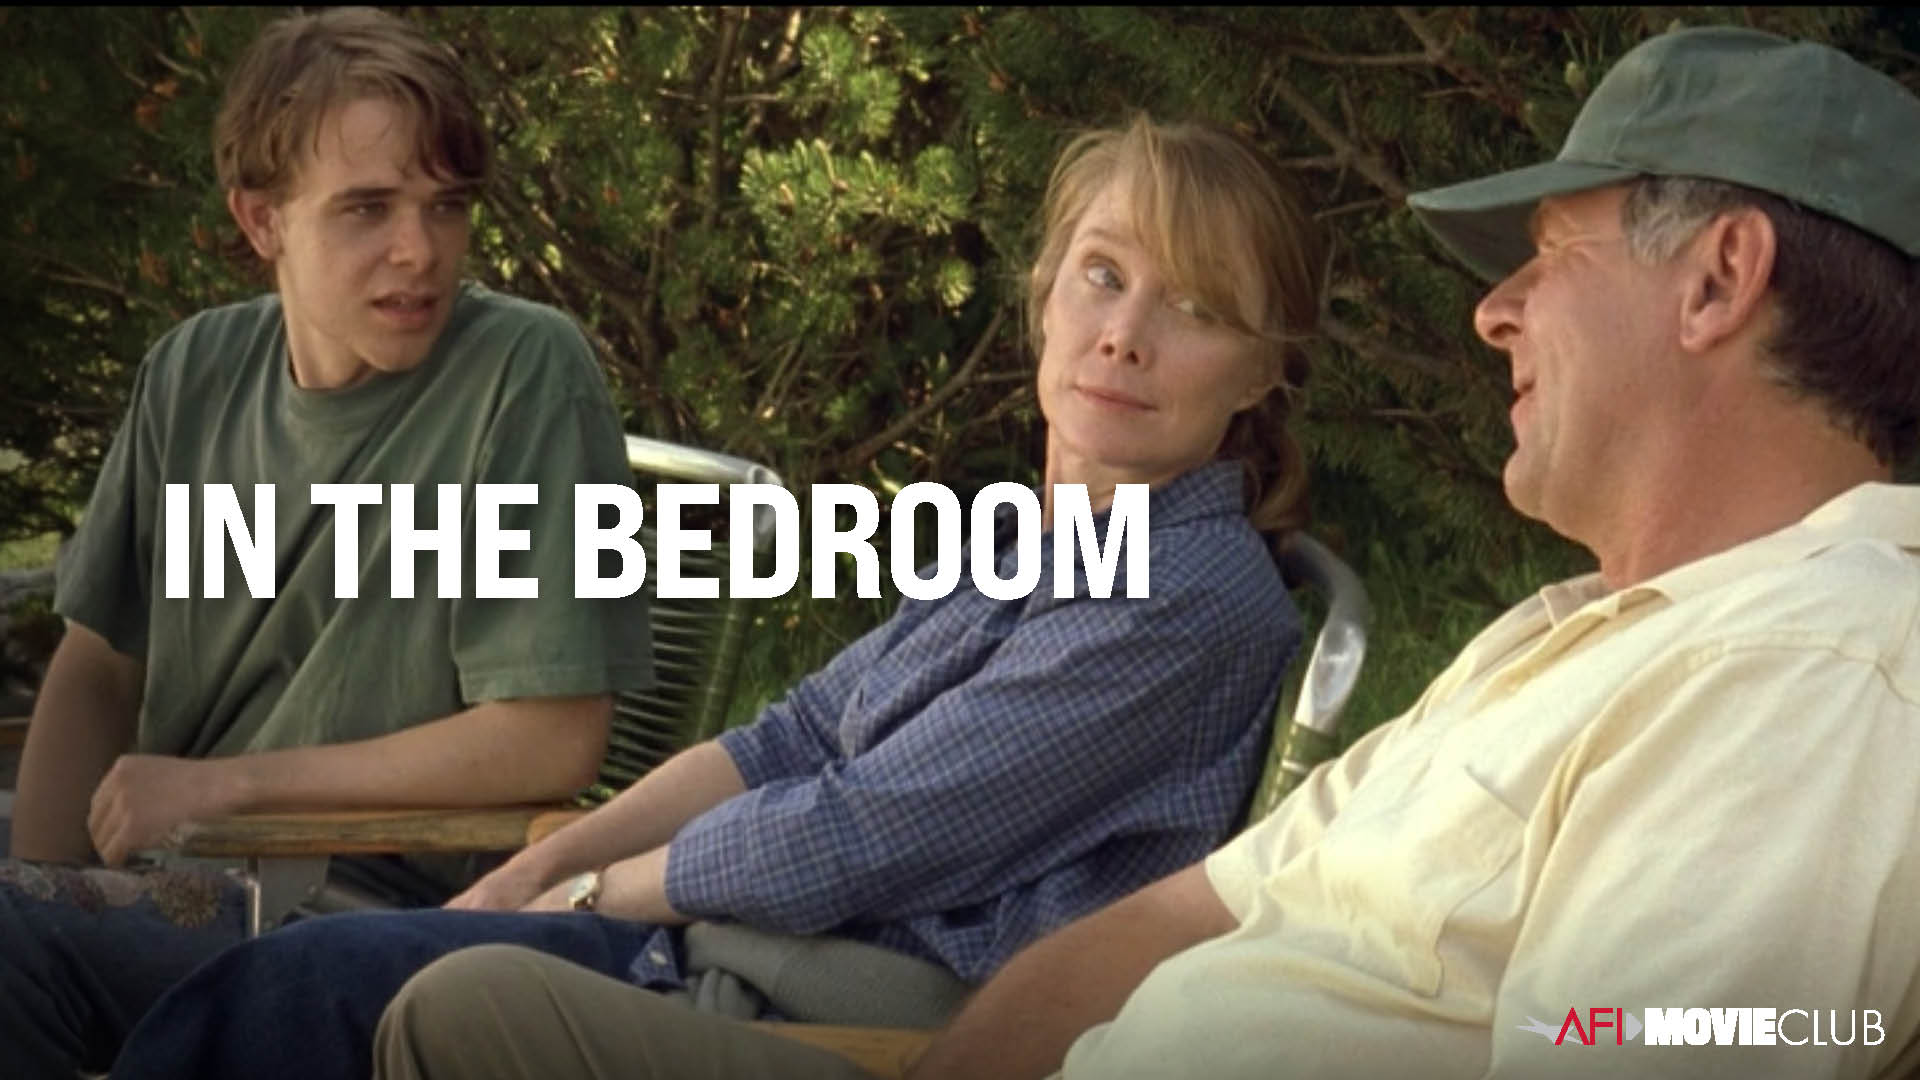 In The Bedroom Film Still - Sissy Spacek, Nick Stahl, and Tom Wilkinson